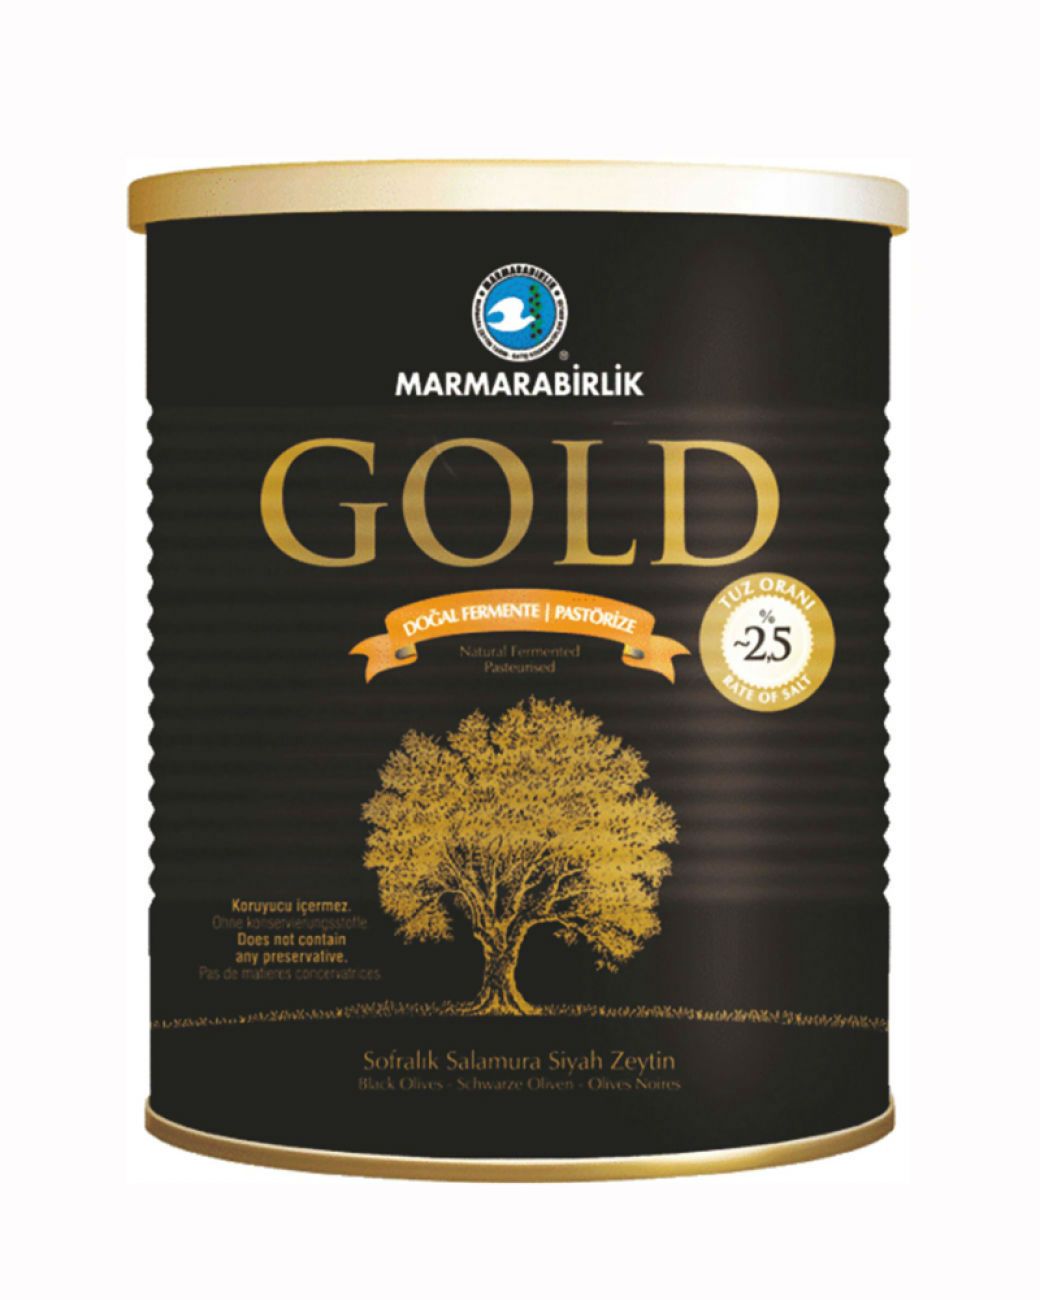 Marmara Birlik Gold Black Olives (400G) - Aytac Foods